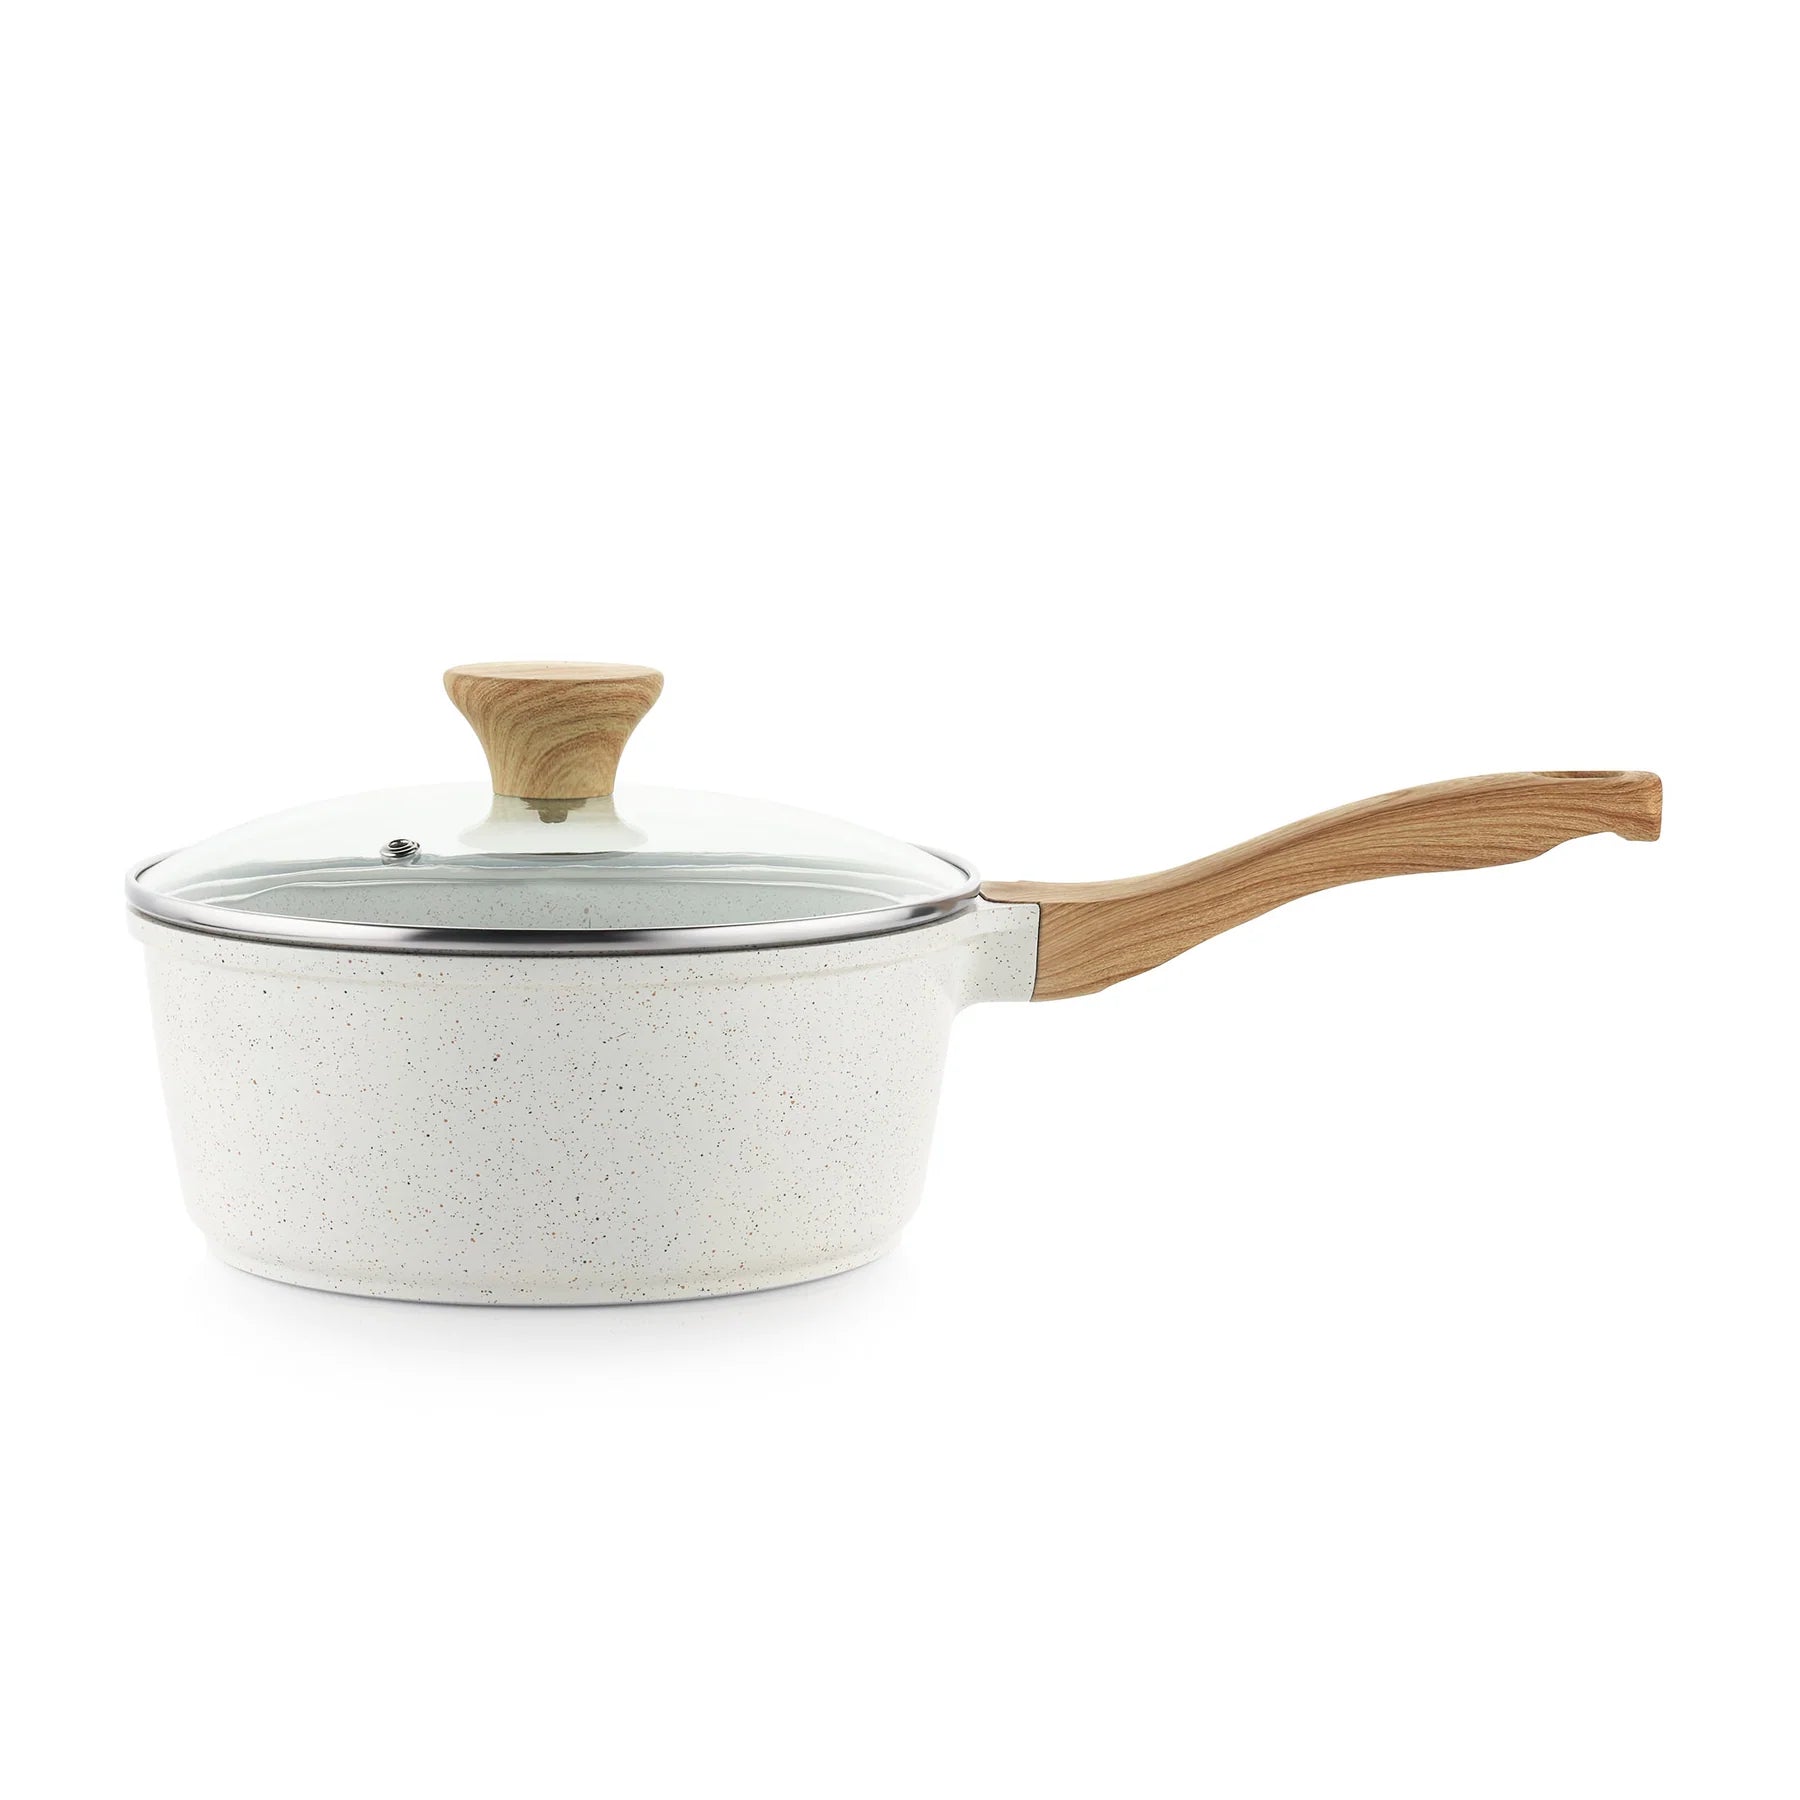  SENSARTE Nonstick Ceramic Cookware Set 13-Piece, Healthy Pots  And Pans Set, Non-toxic Kitchen Cooking Set